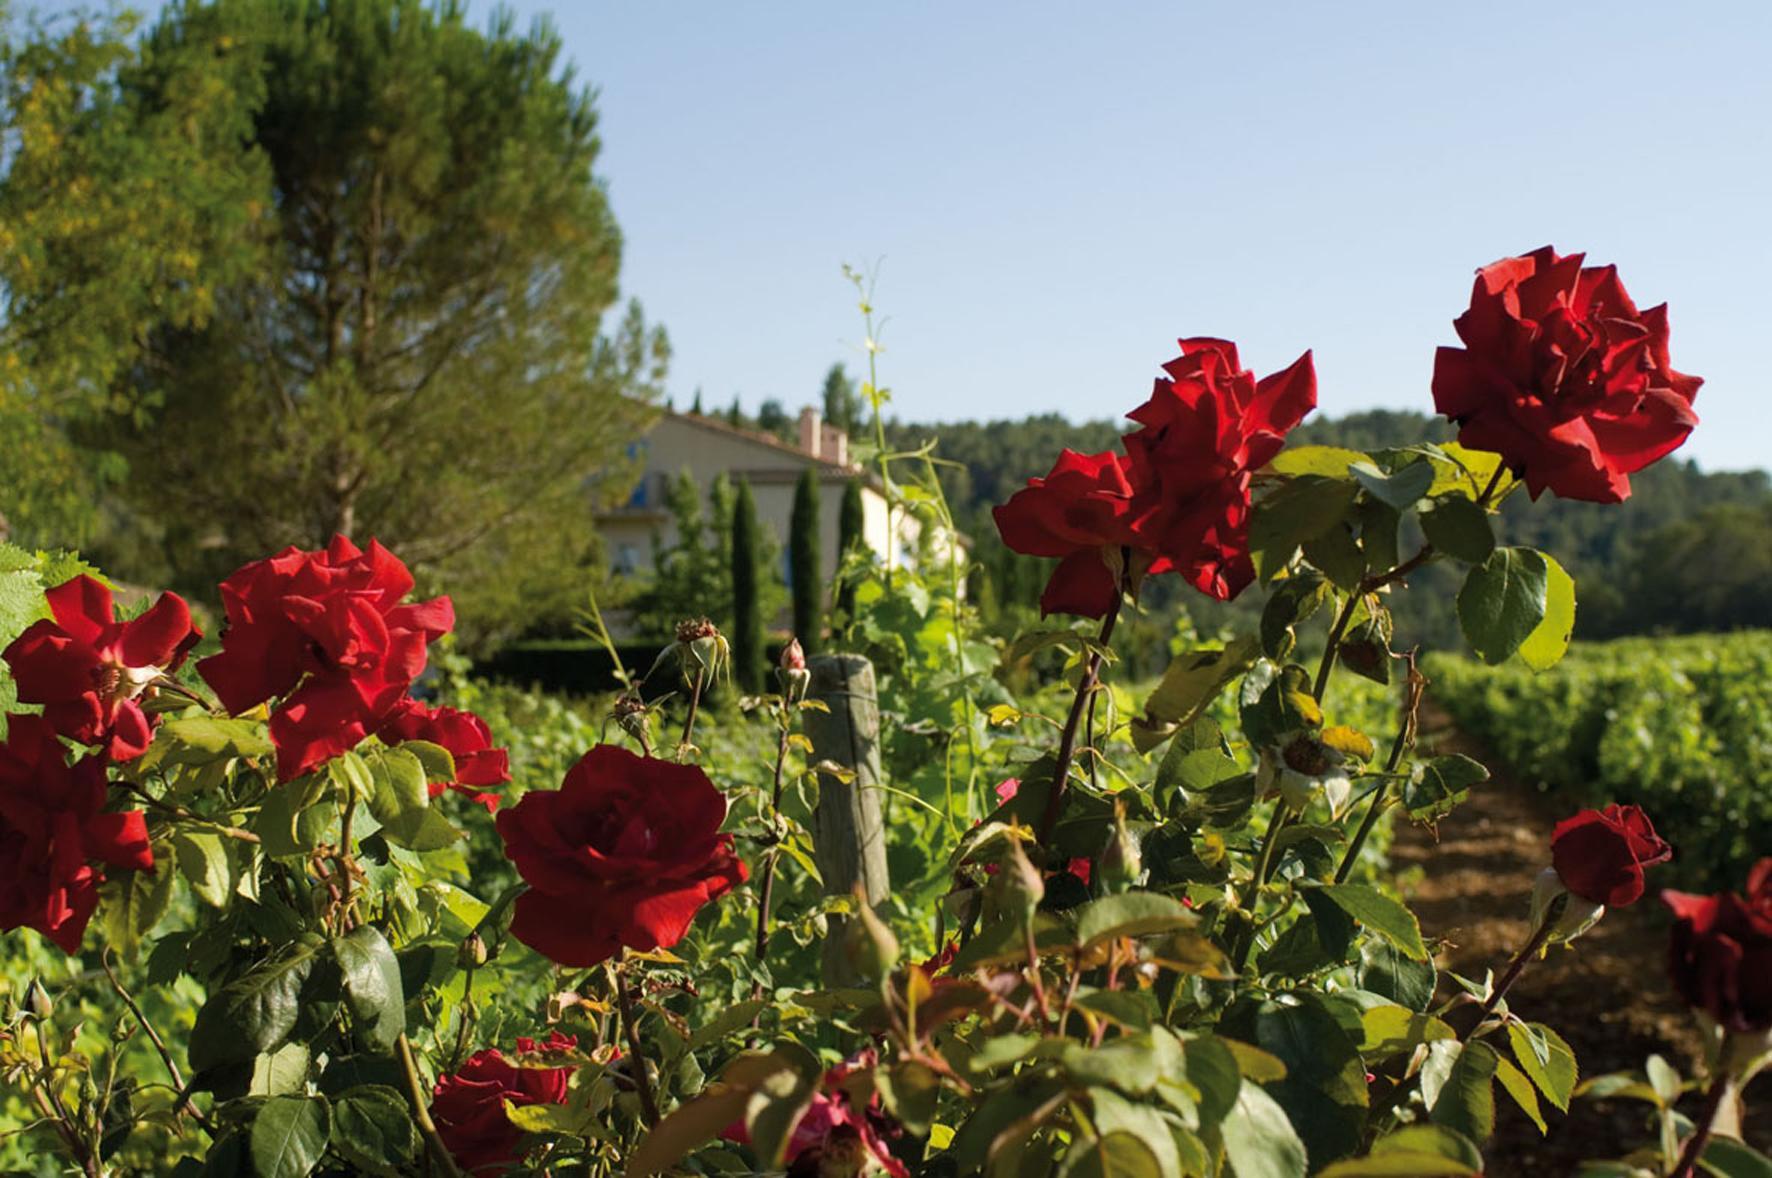 Le potager du Château de Berne : L’éducation au goût, aux saveurs méconnues ou oubliées…